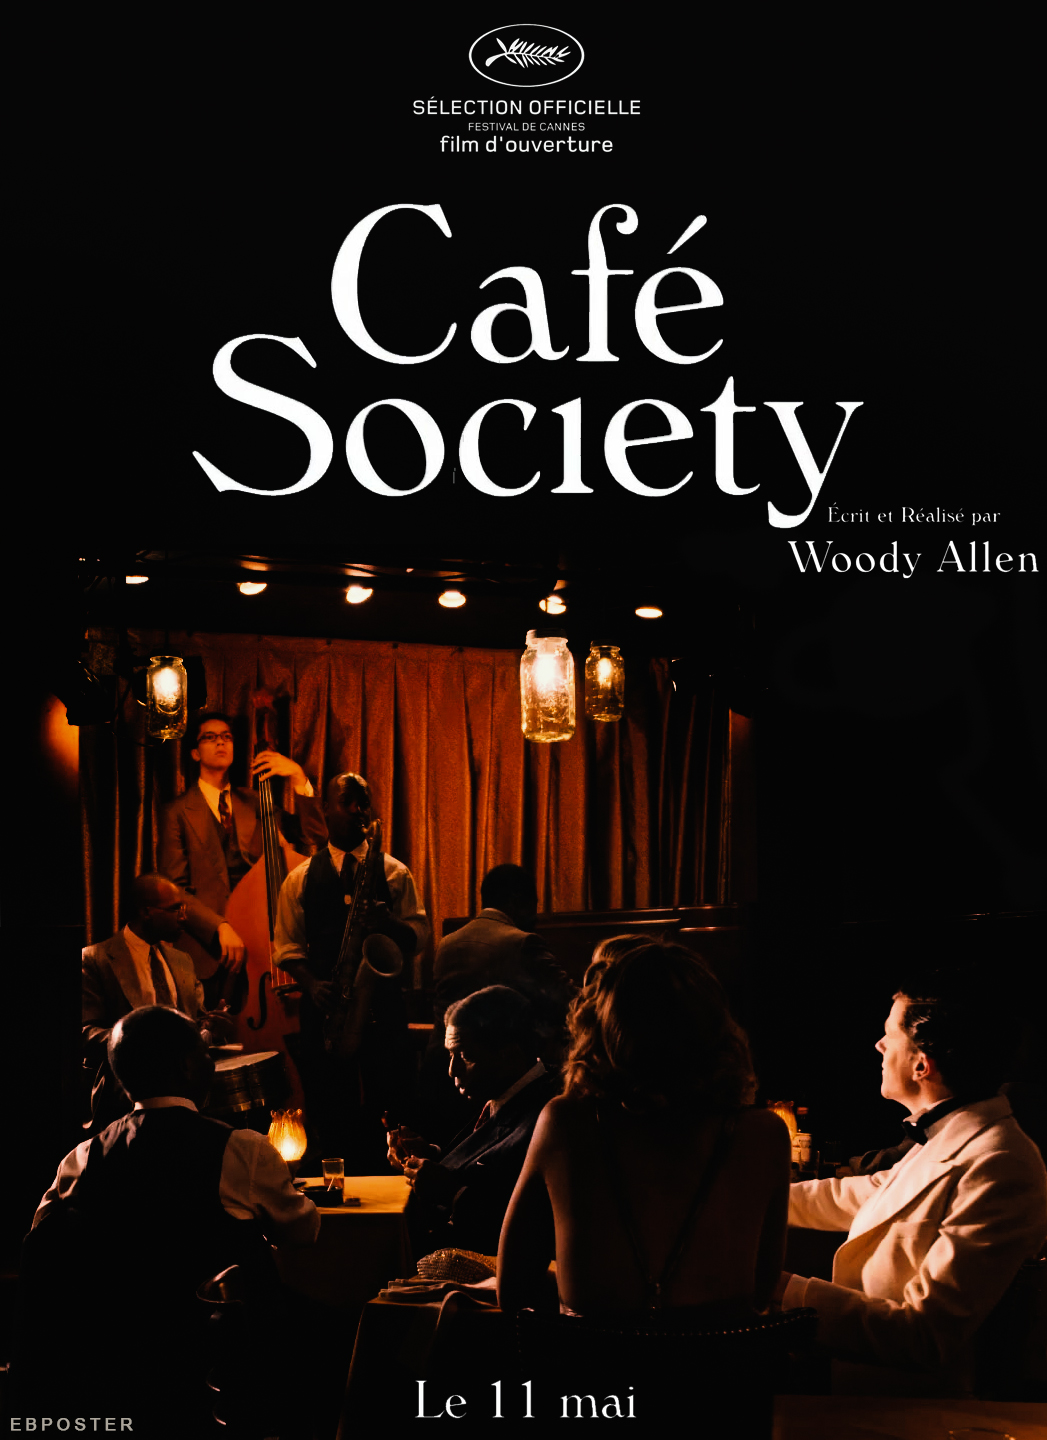 Café Society (2016) directed by Woody Allen – Jesse Eisenberg, Kristen Stewart ...